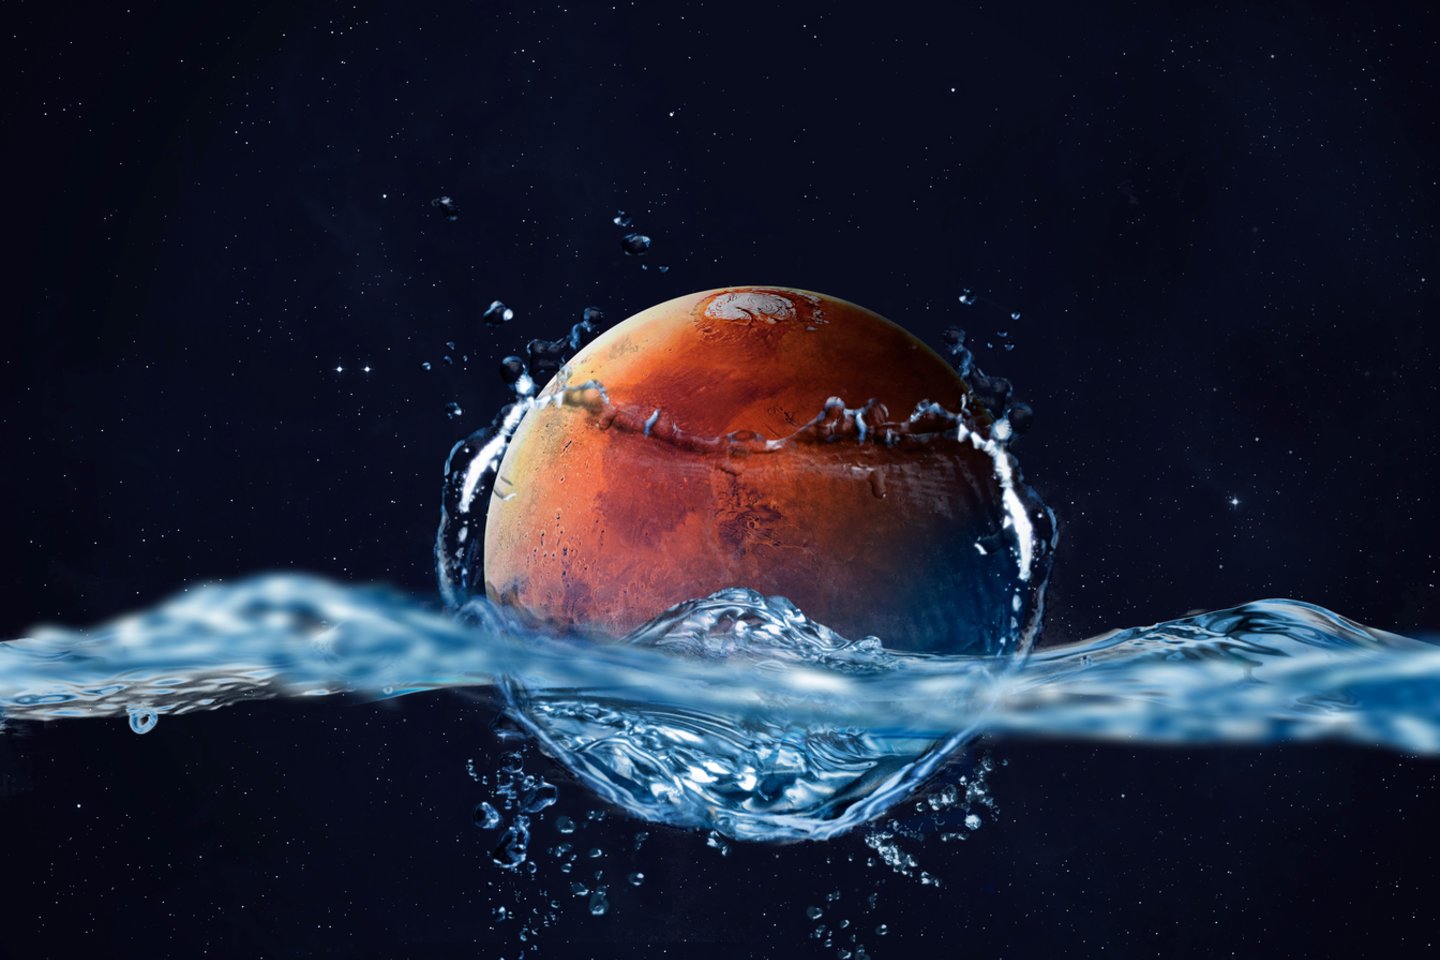  Žvelgdami į Marse esančias upių deltas, panašias deltas Žemėje, kai kurie mokslininkai teigia, kad anksčiau raudonąją planetą bent jau iš dalies dengė vandenynai. <br> 123rf iliustr.